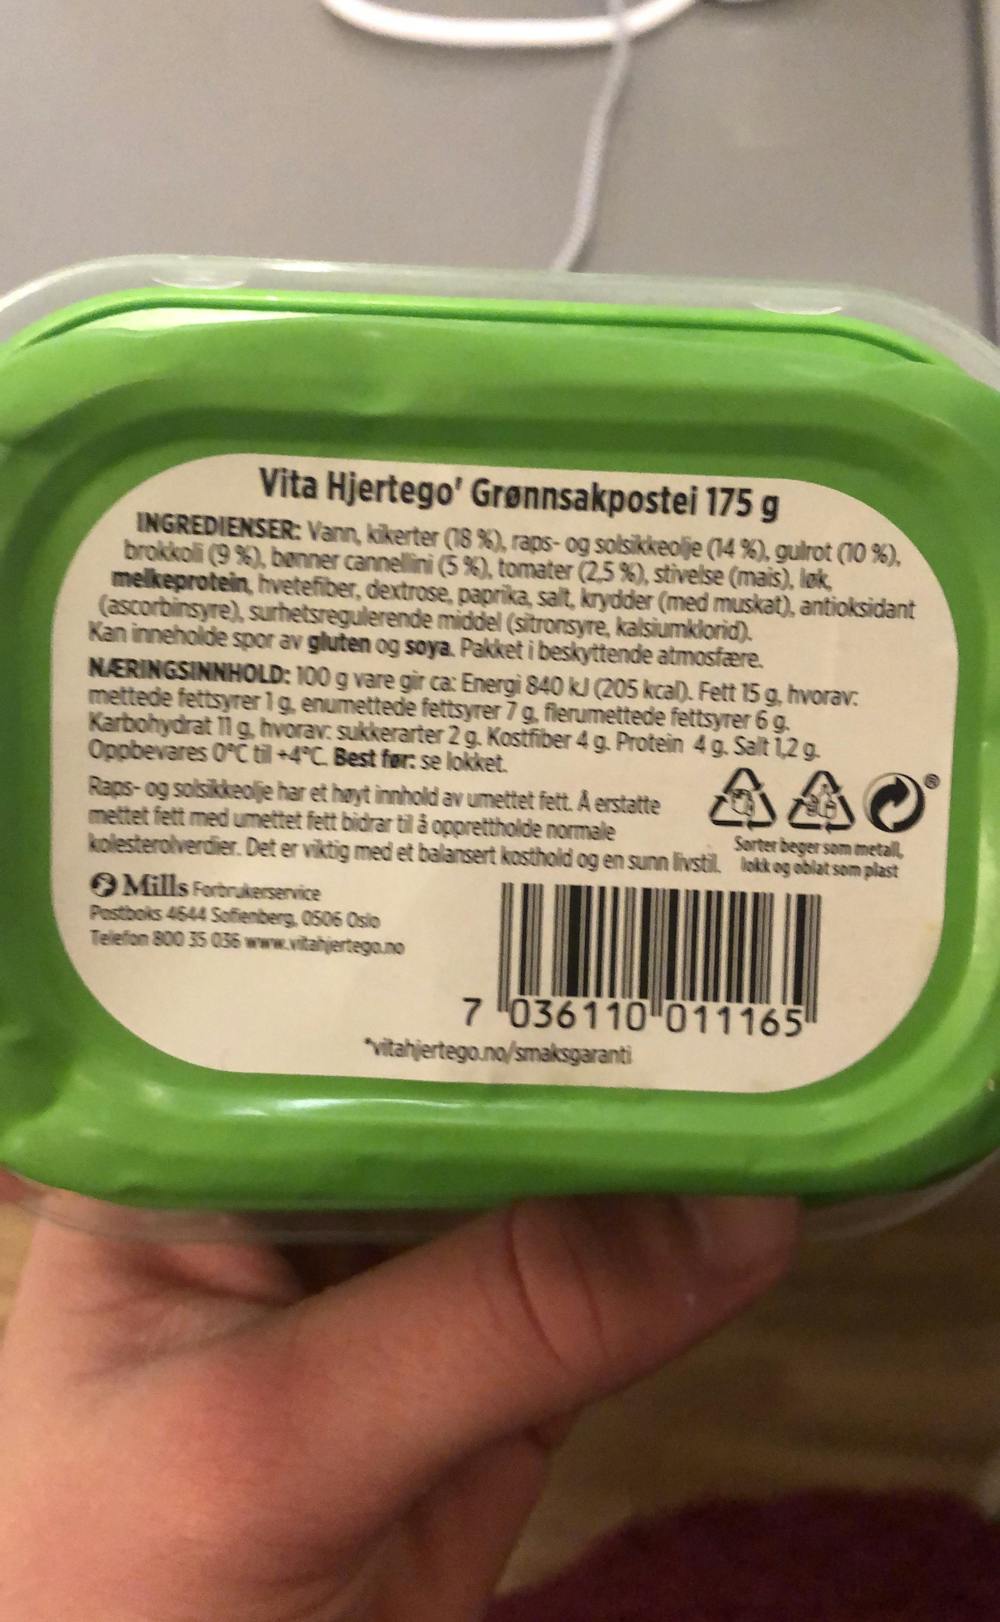 Ingrediensliste - Grønnsakspostei, Vita hjertego'